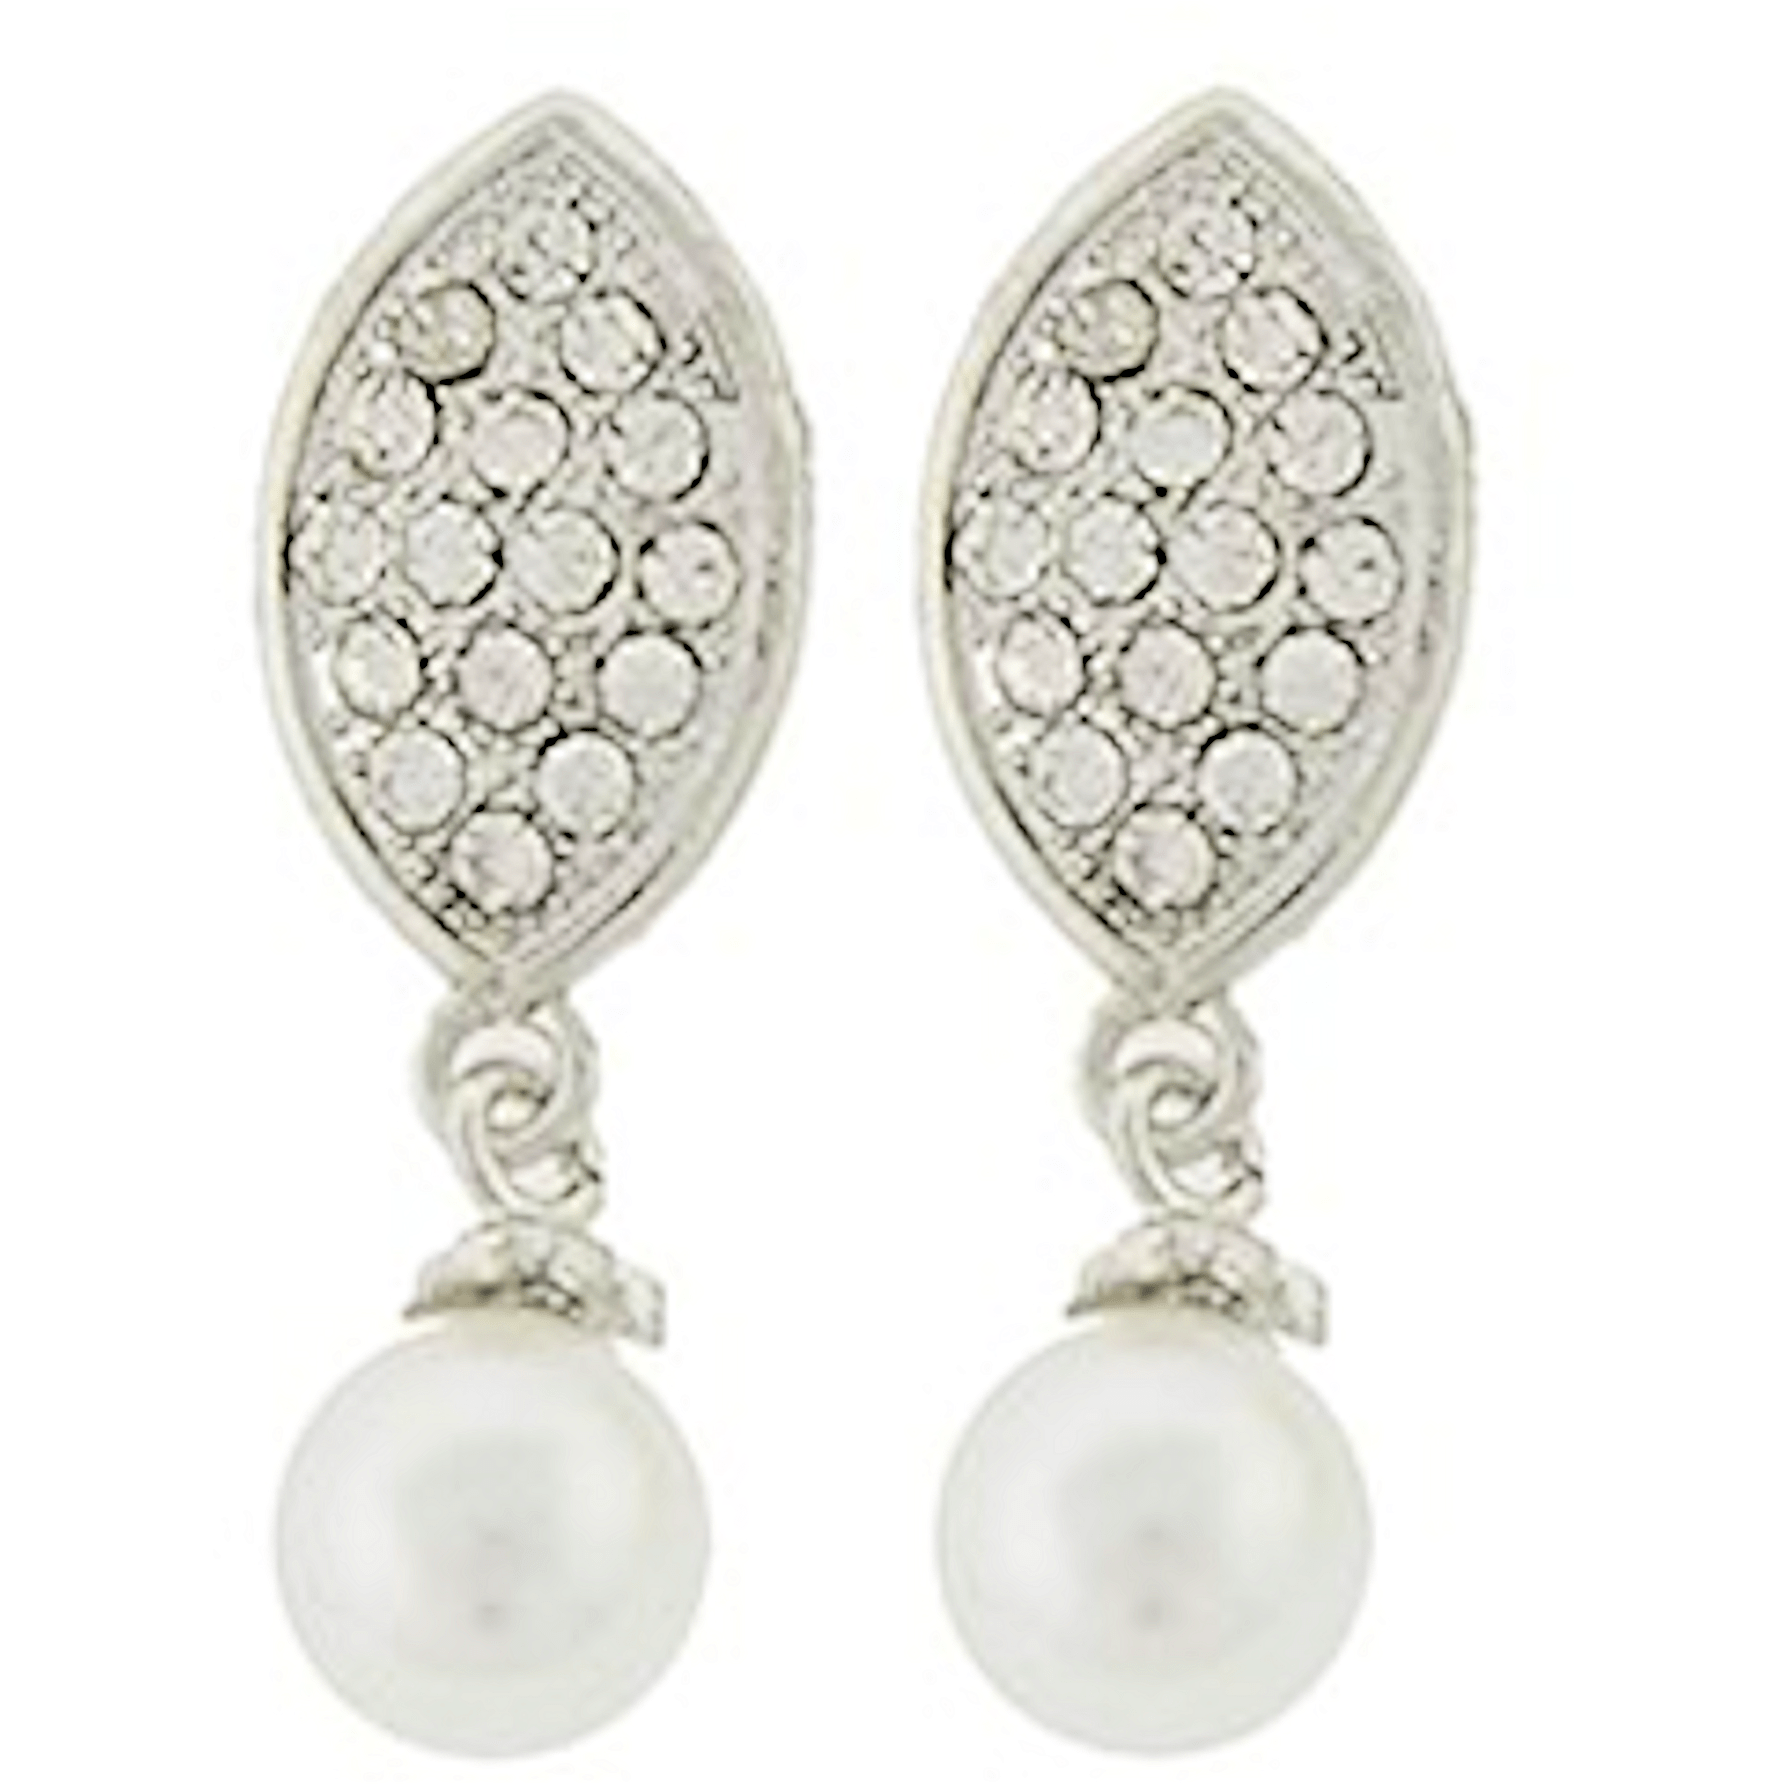 Pearl and Crystal Rhinestone Oval Dangle Earrings